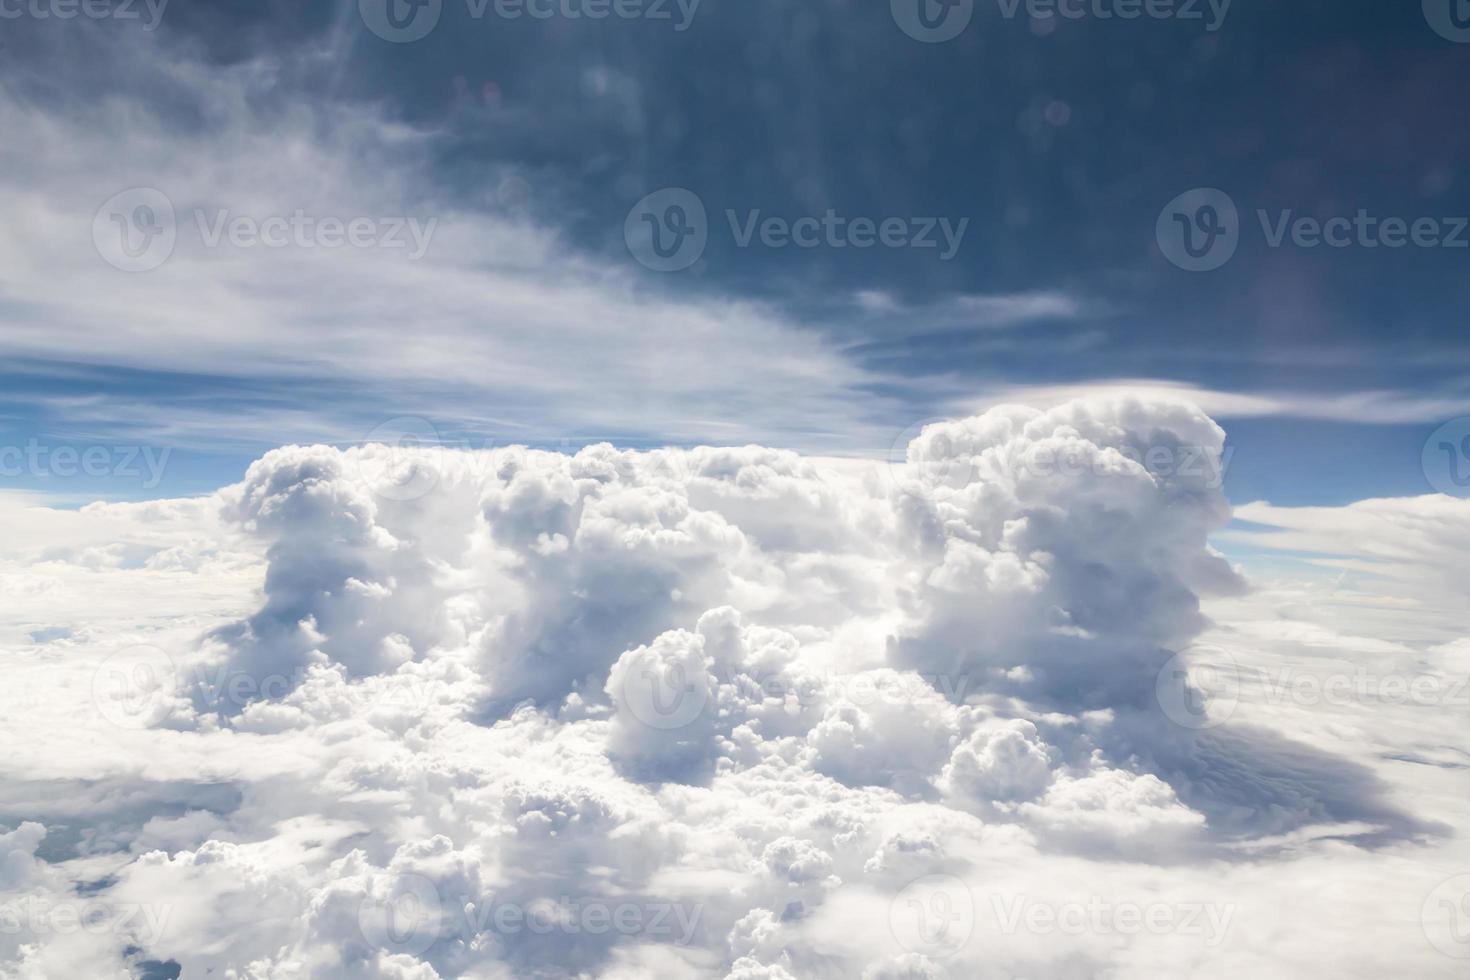 céu e nuvens Visão a partir de dentro a avião foto